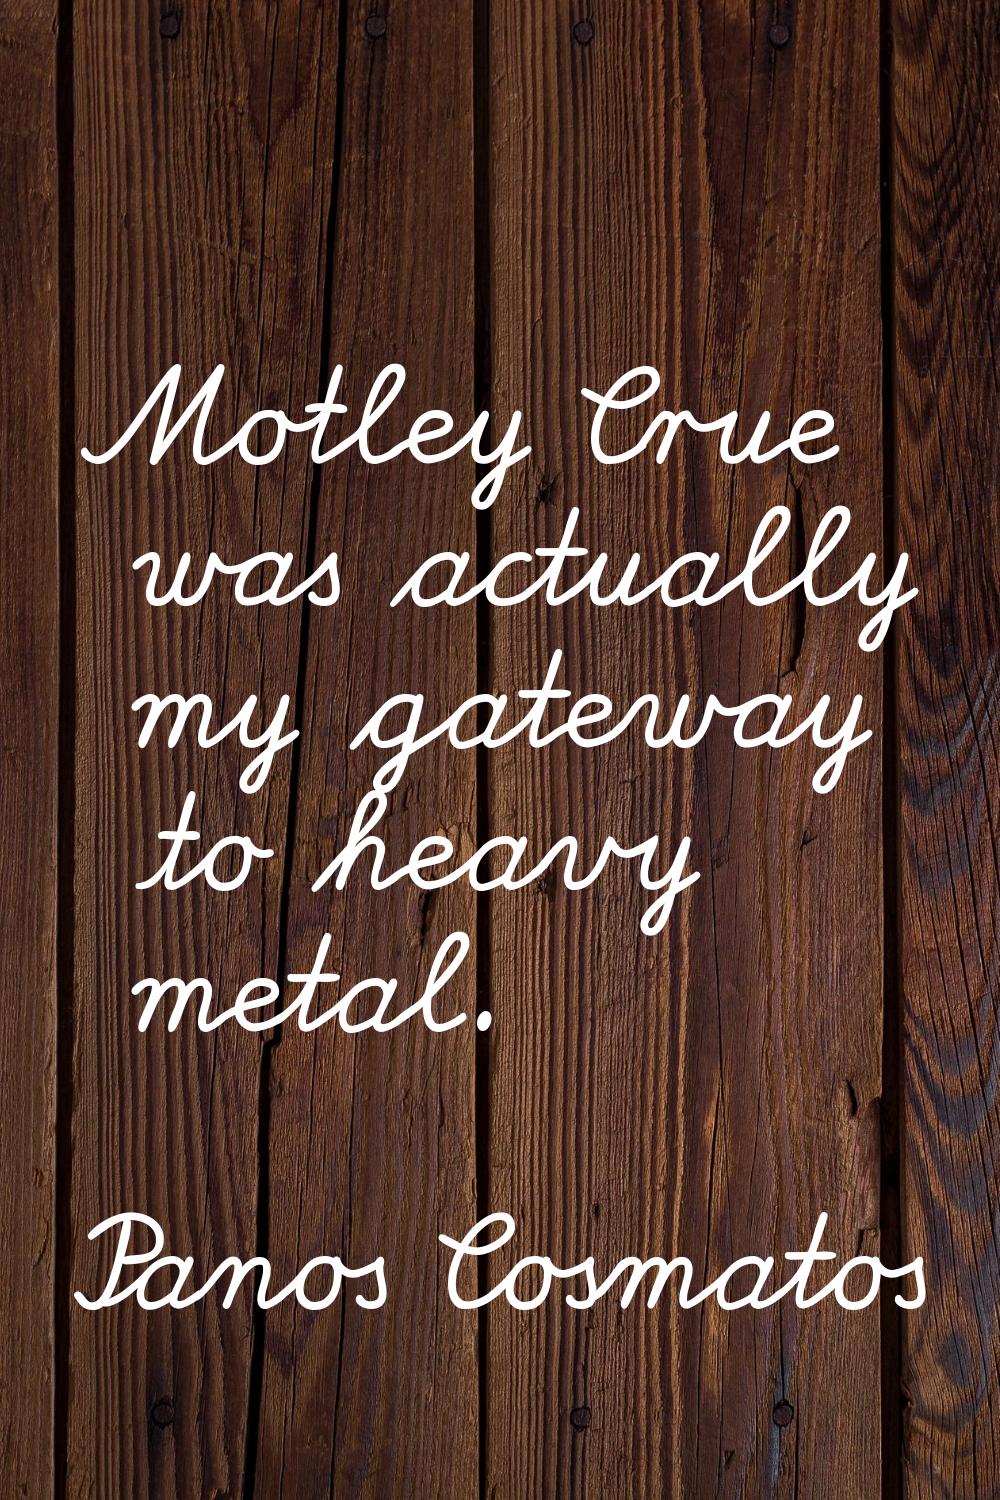 Motley Crue was actually my gateway to heavy metal.